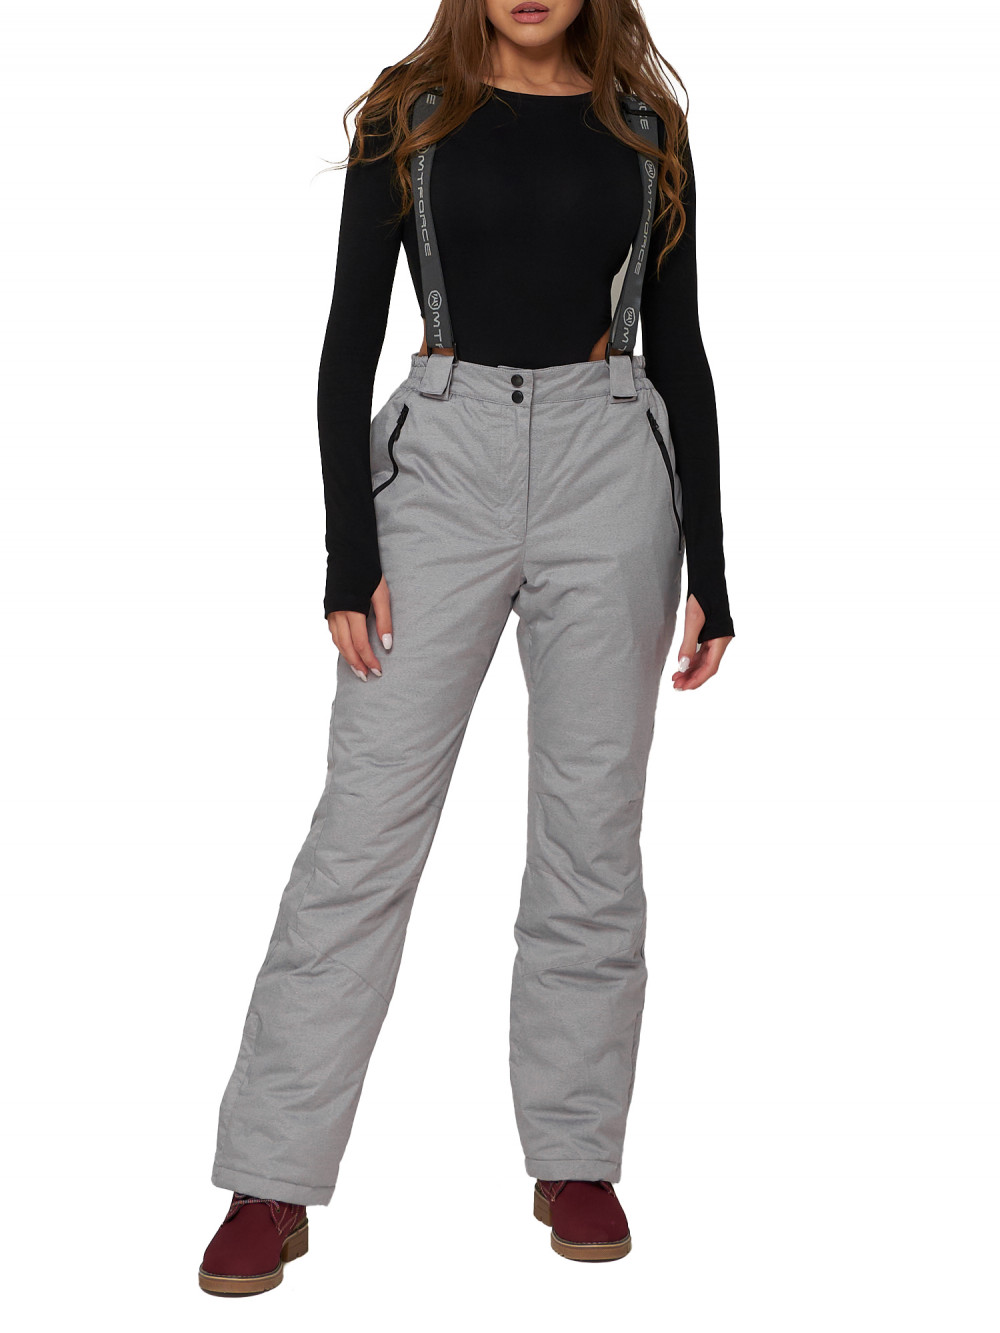 Полукомбинезон брюки горнолыжные женские AD2221Sr серого цвета, 46